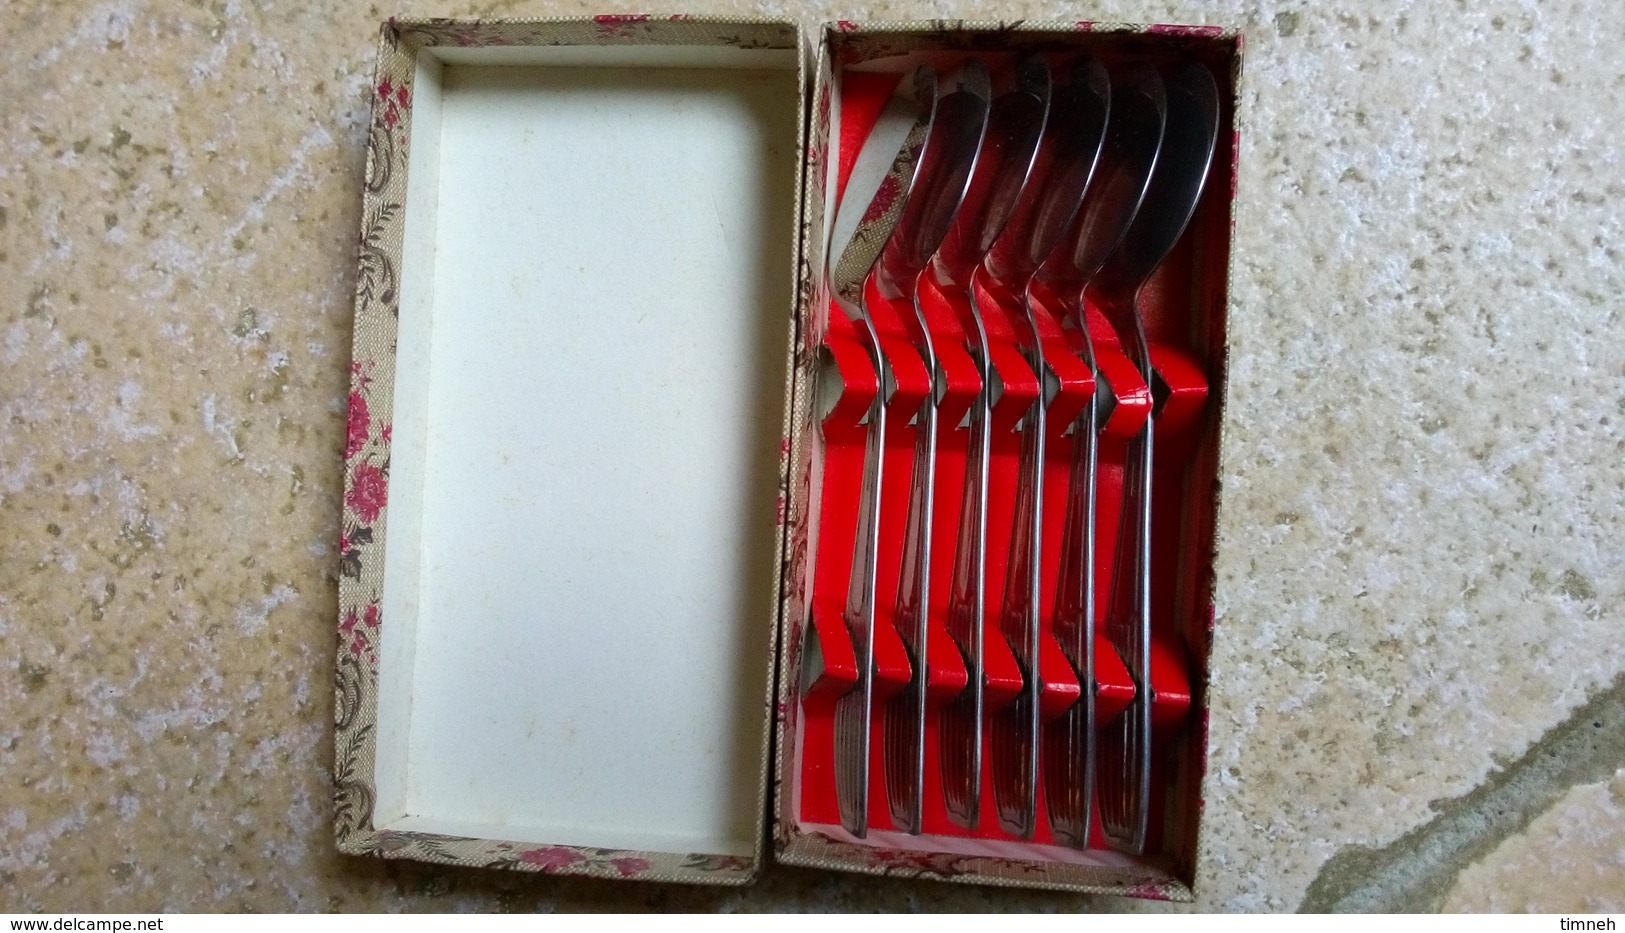 Durinox - coffret carton aux fleurs - 6 petites cuillères plates-  spécial glace & dessert glacé - inox - vers 1960